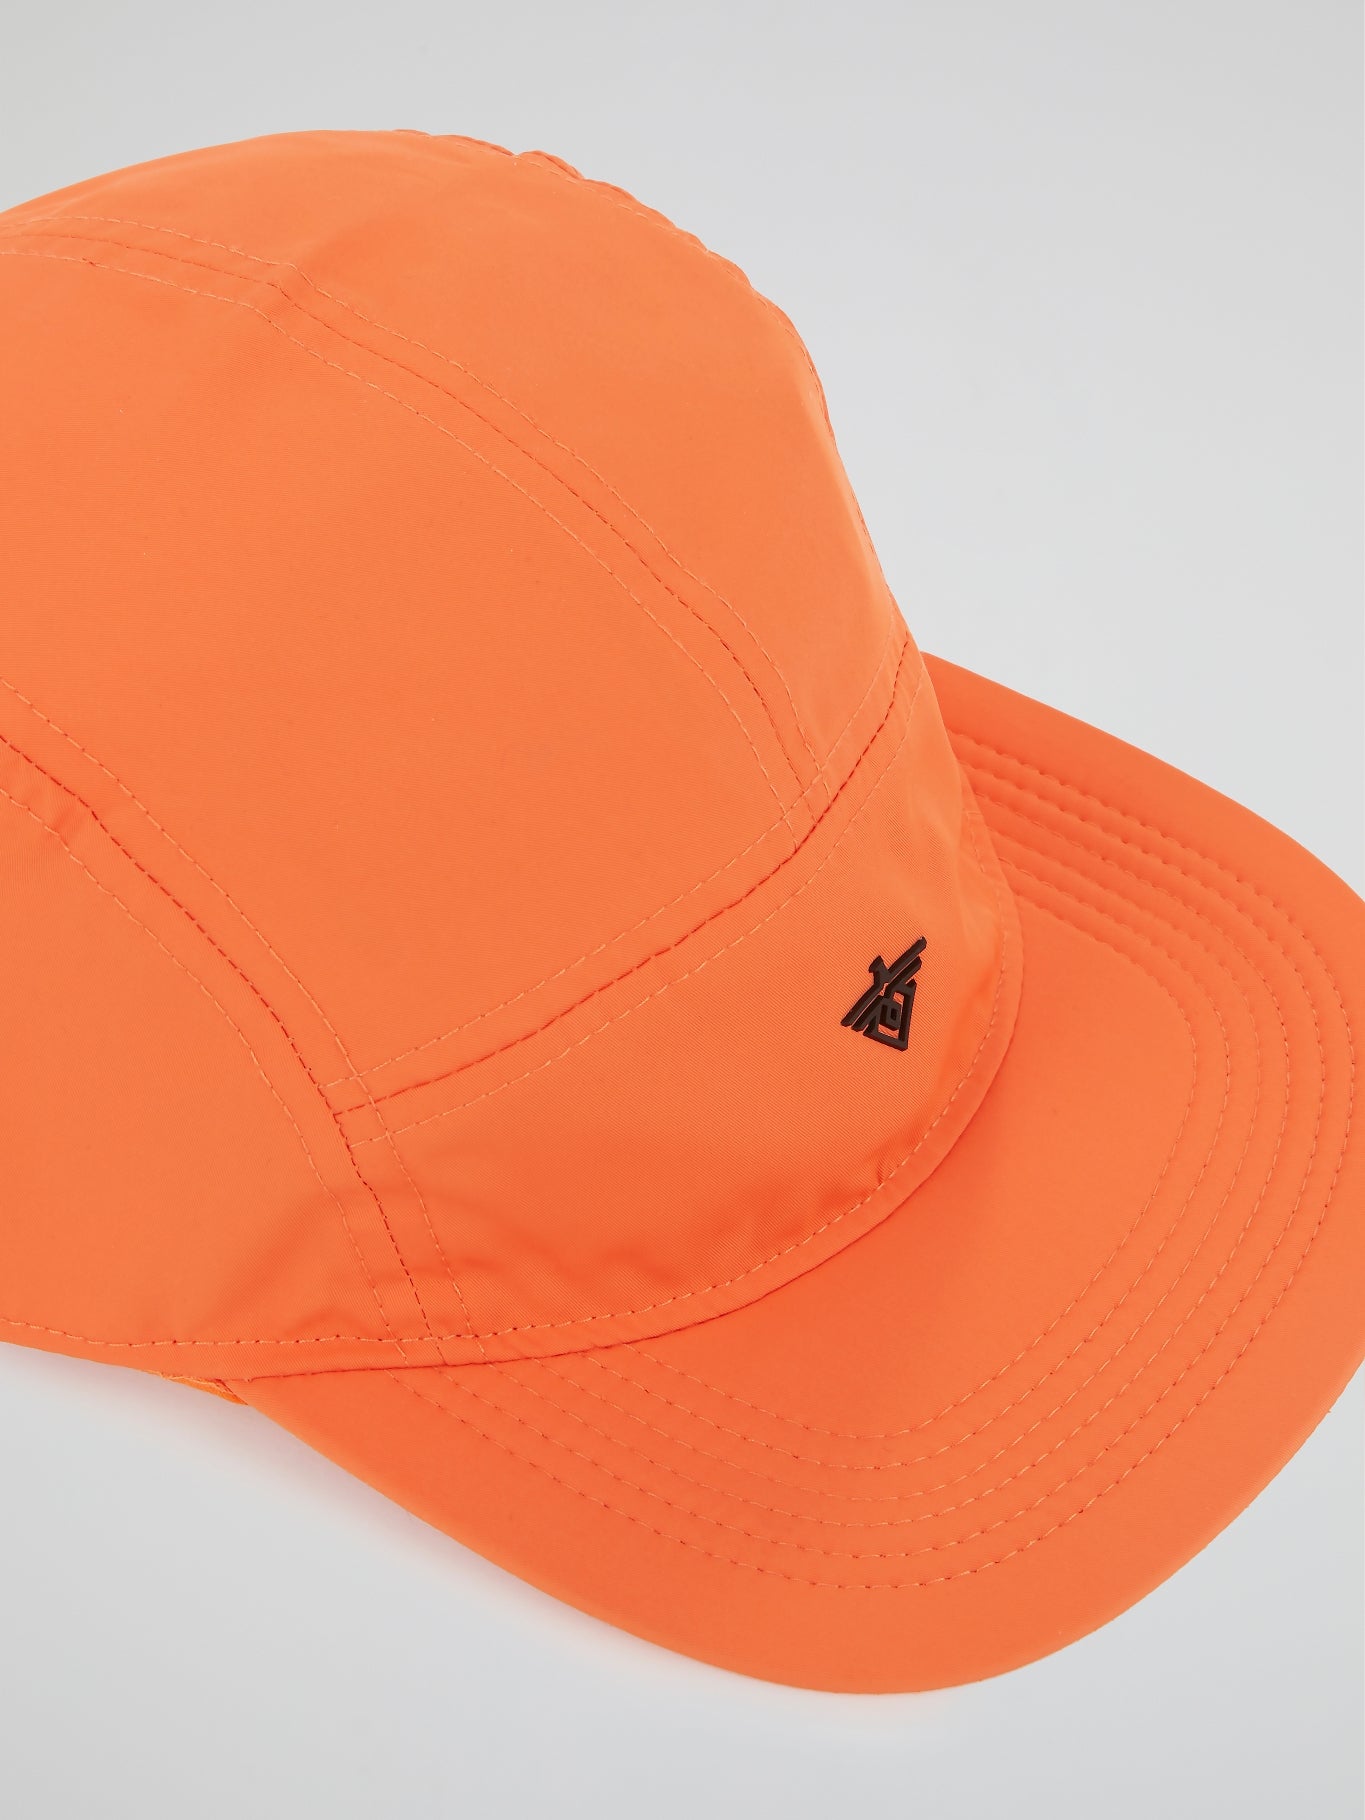 Orange Pane Soft Cap